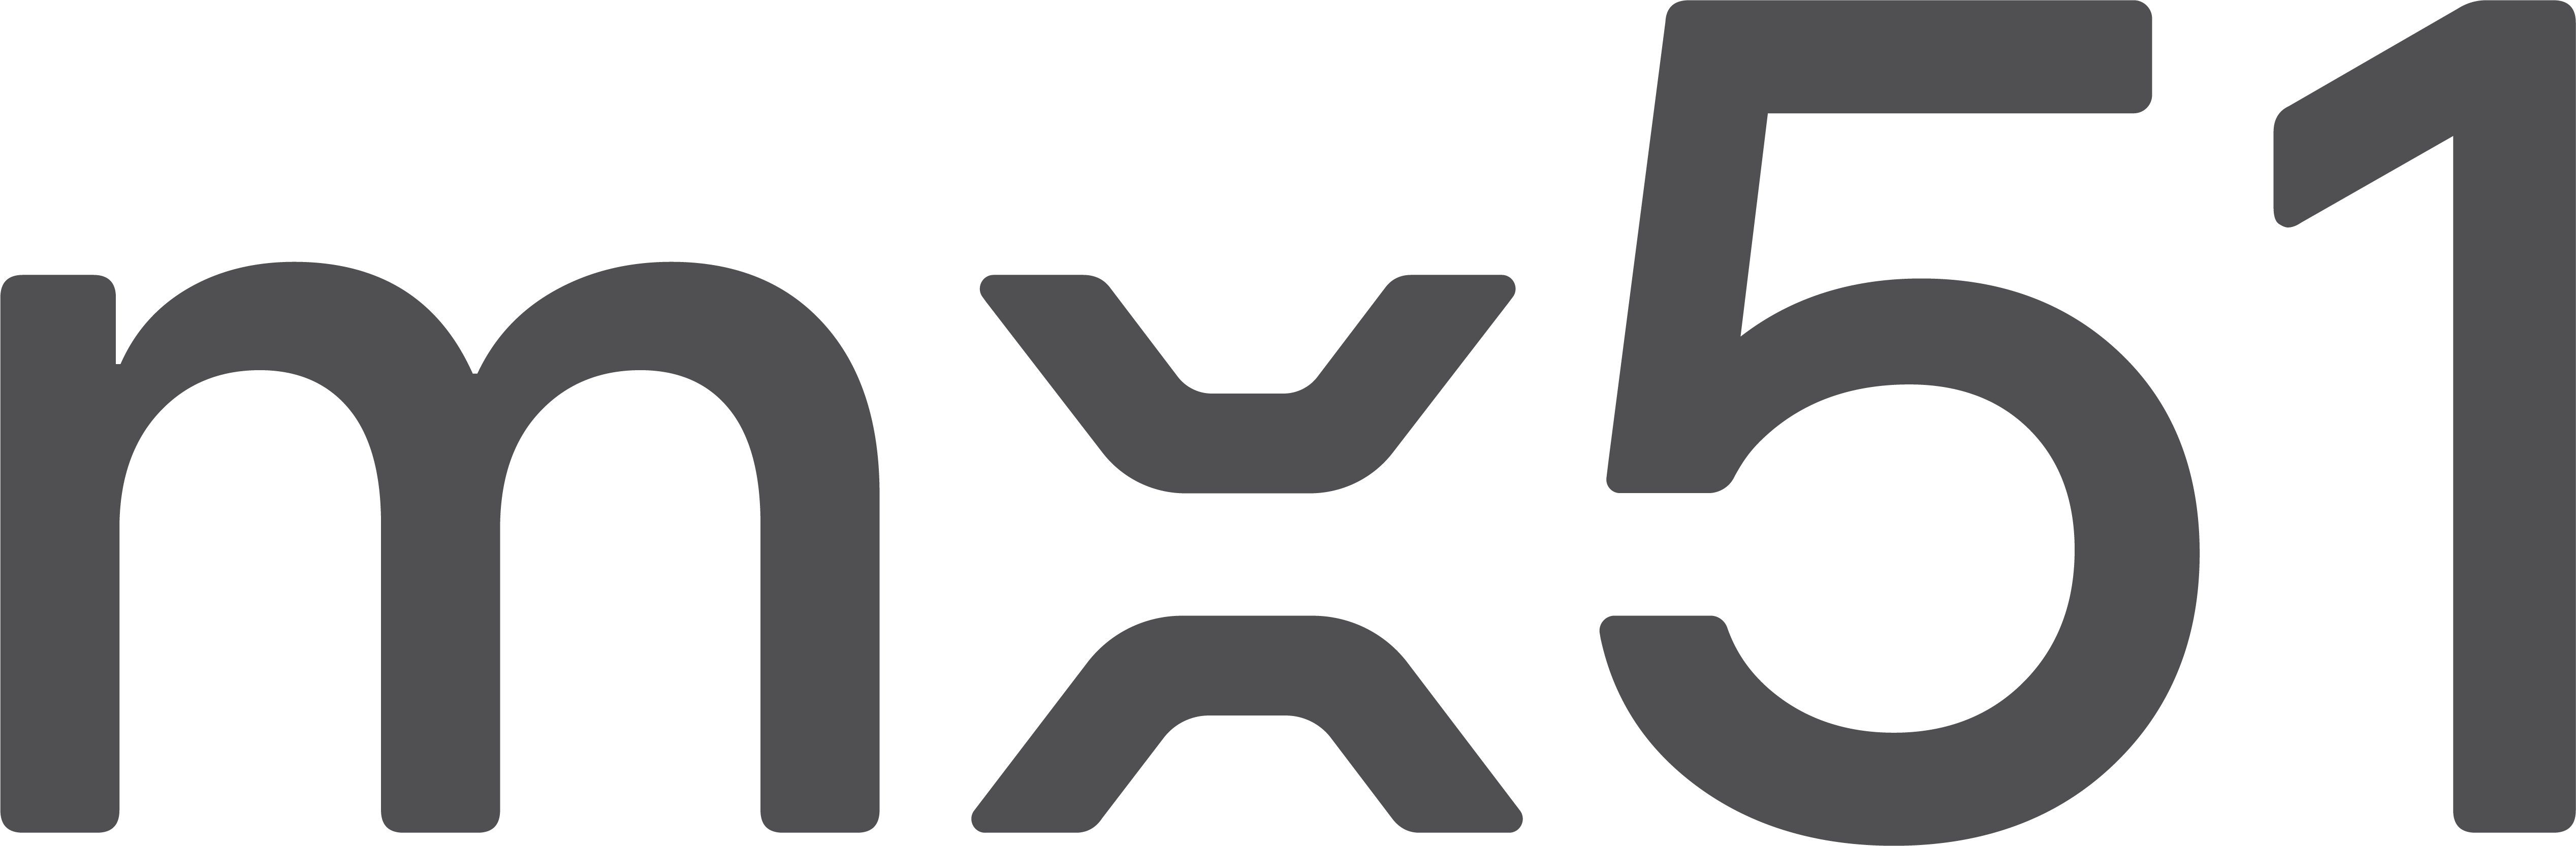 mx51 logo